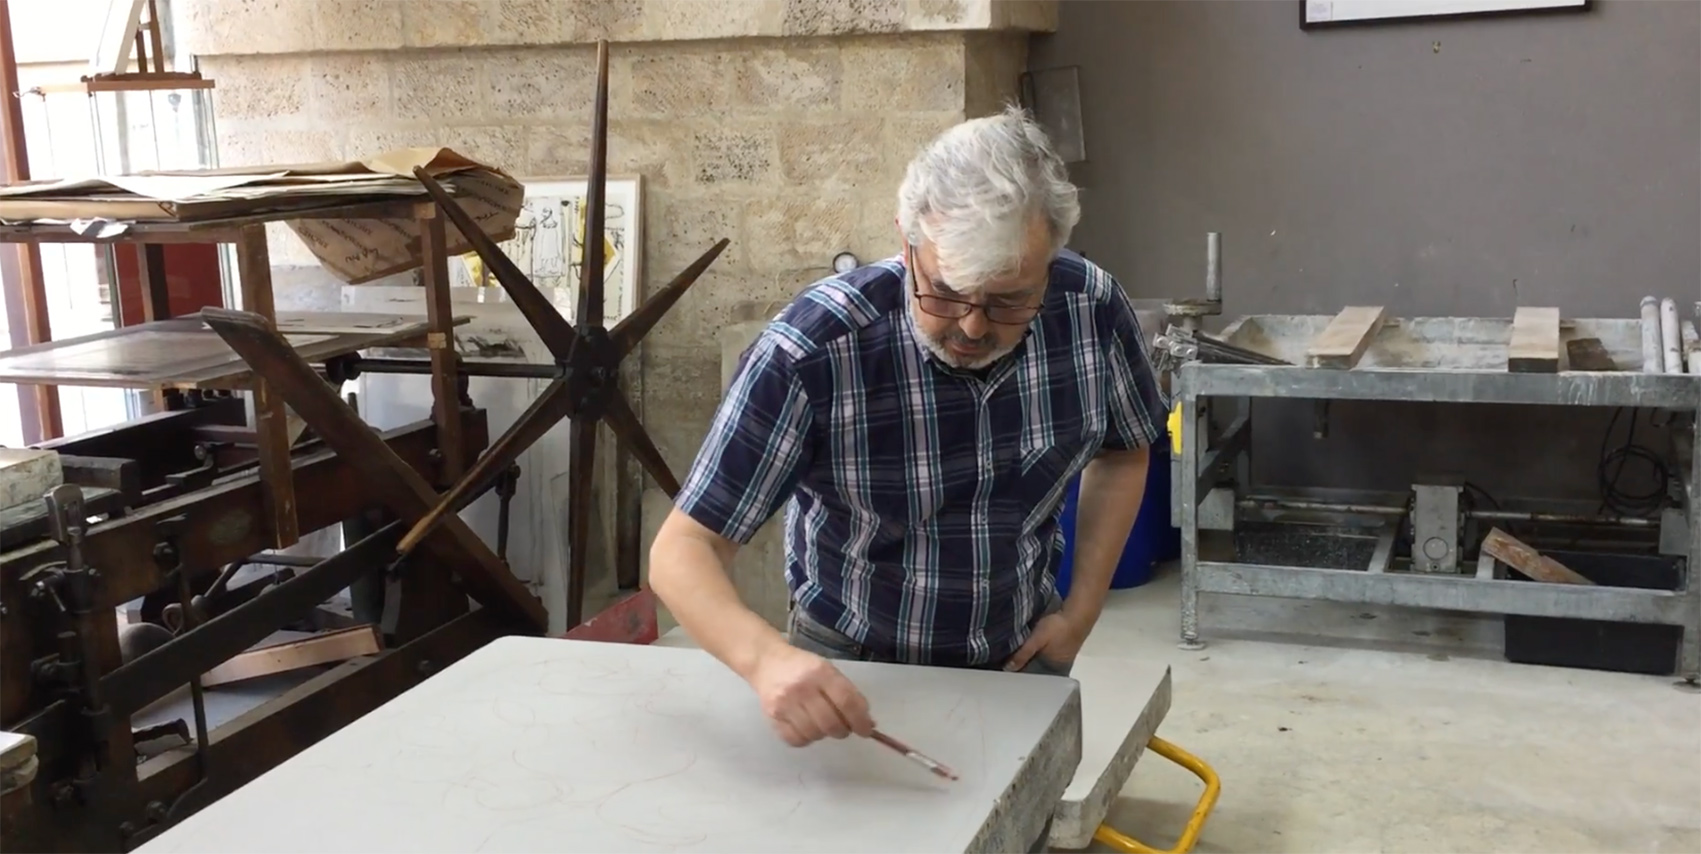 Video - Hervé Di Rosa débute l'esquisse de sa composition à la sanguine directement sur la pierre